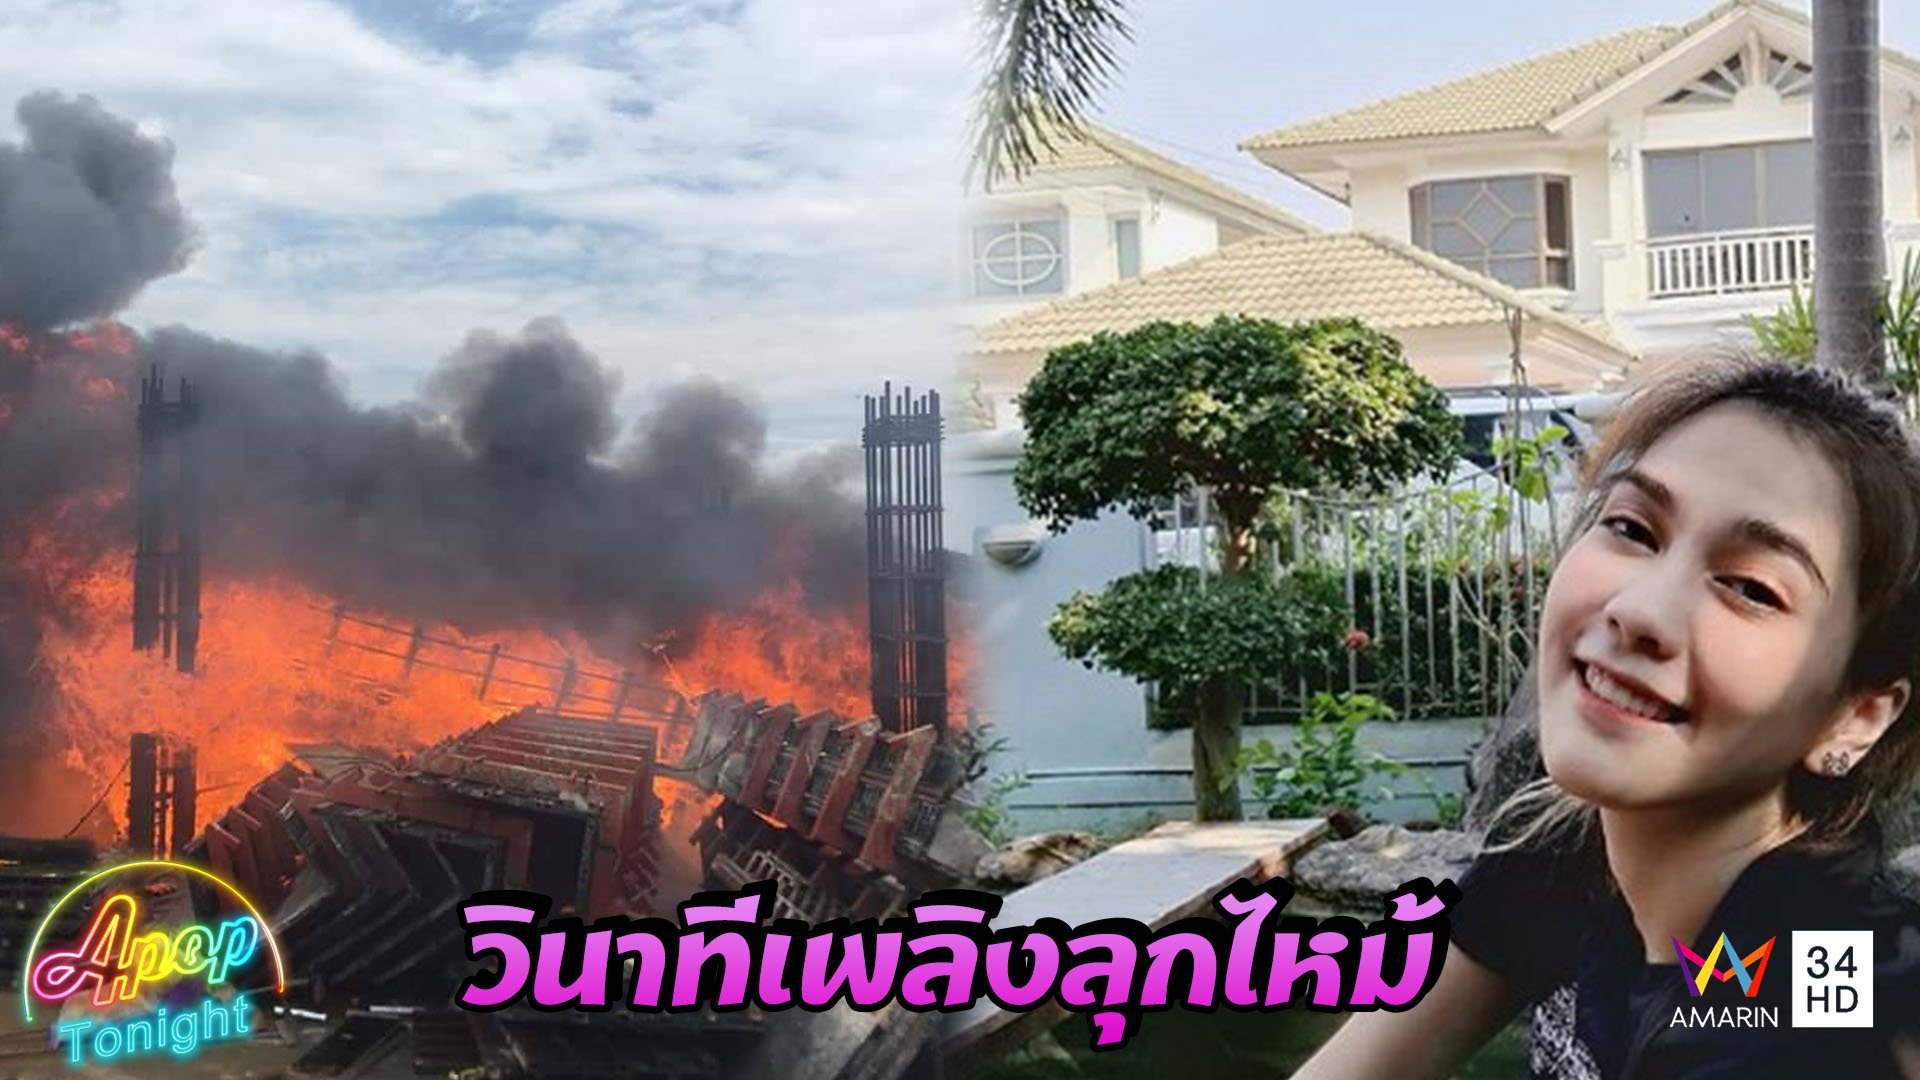 “พั้นช์ วรกาญจน์” เปิดใจหลังไซต์งานก่อสร้างเกือบทำไฟไหม้บ้าน | Apop Tonight | 19 เม.ย. 63 | AMARIN TVHD34